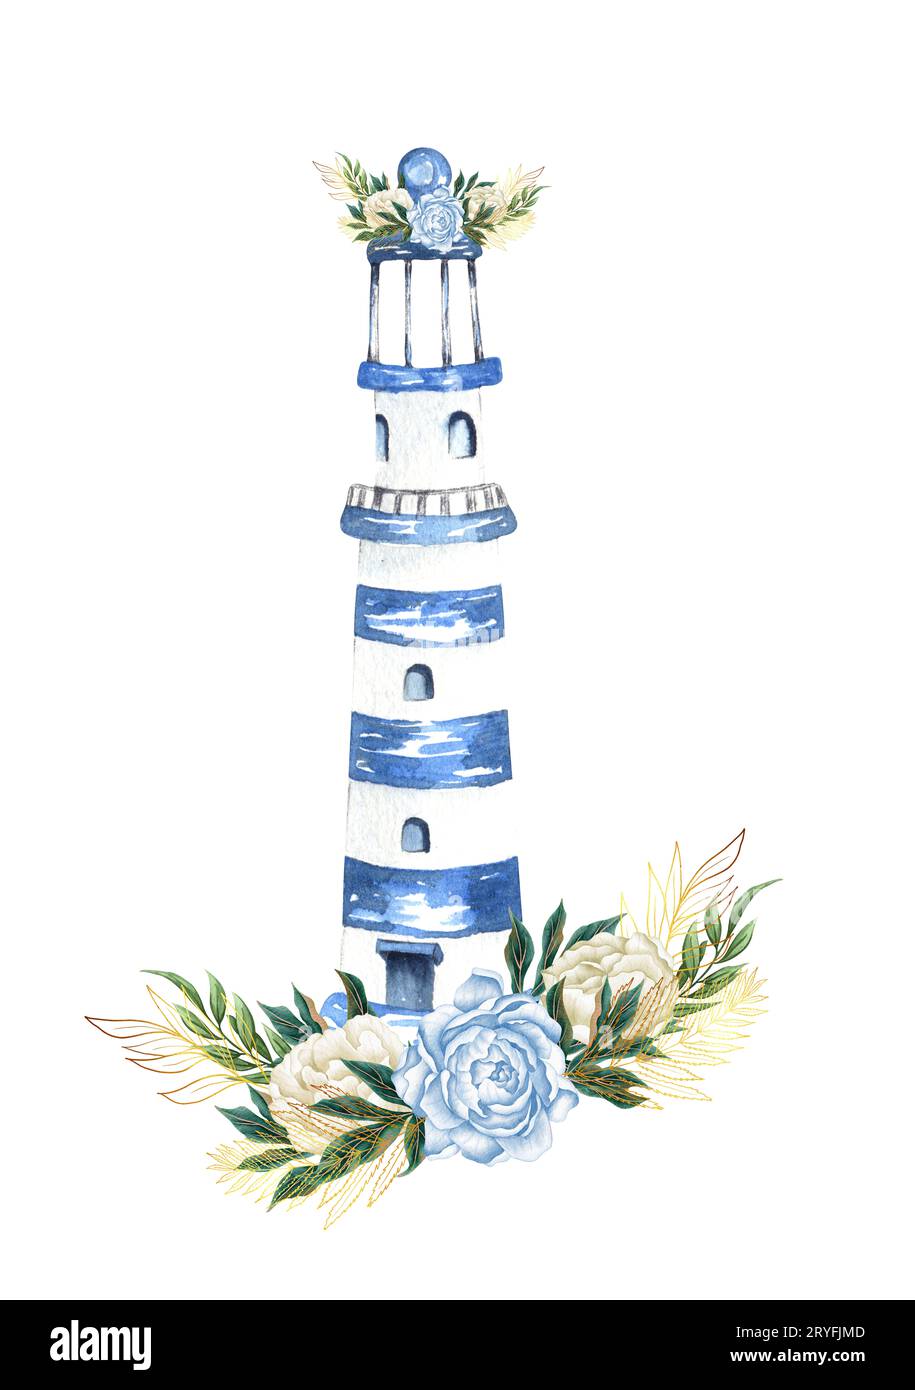 Aquarelle dessinée à la main nautique, marine, illustration florale avec phare et arrangement de bouquet de fleurs Banque D'Images